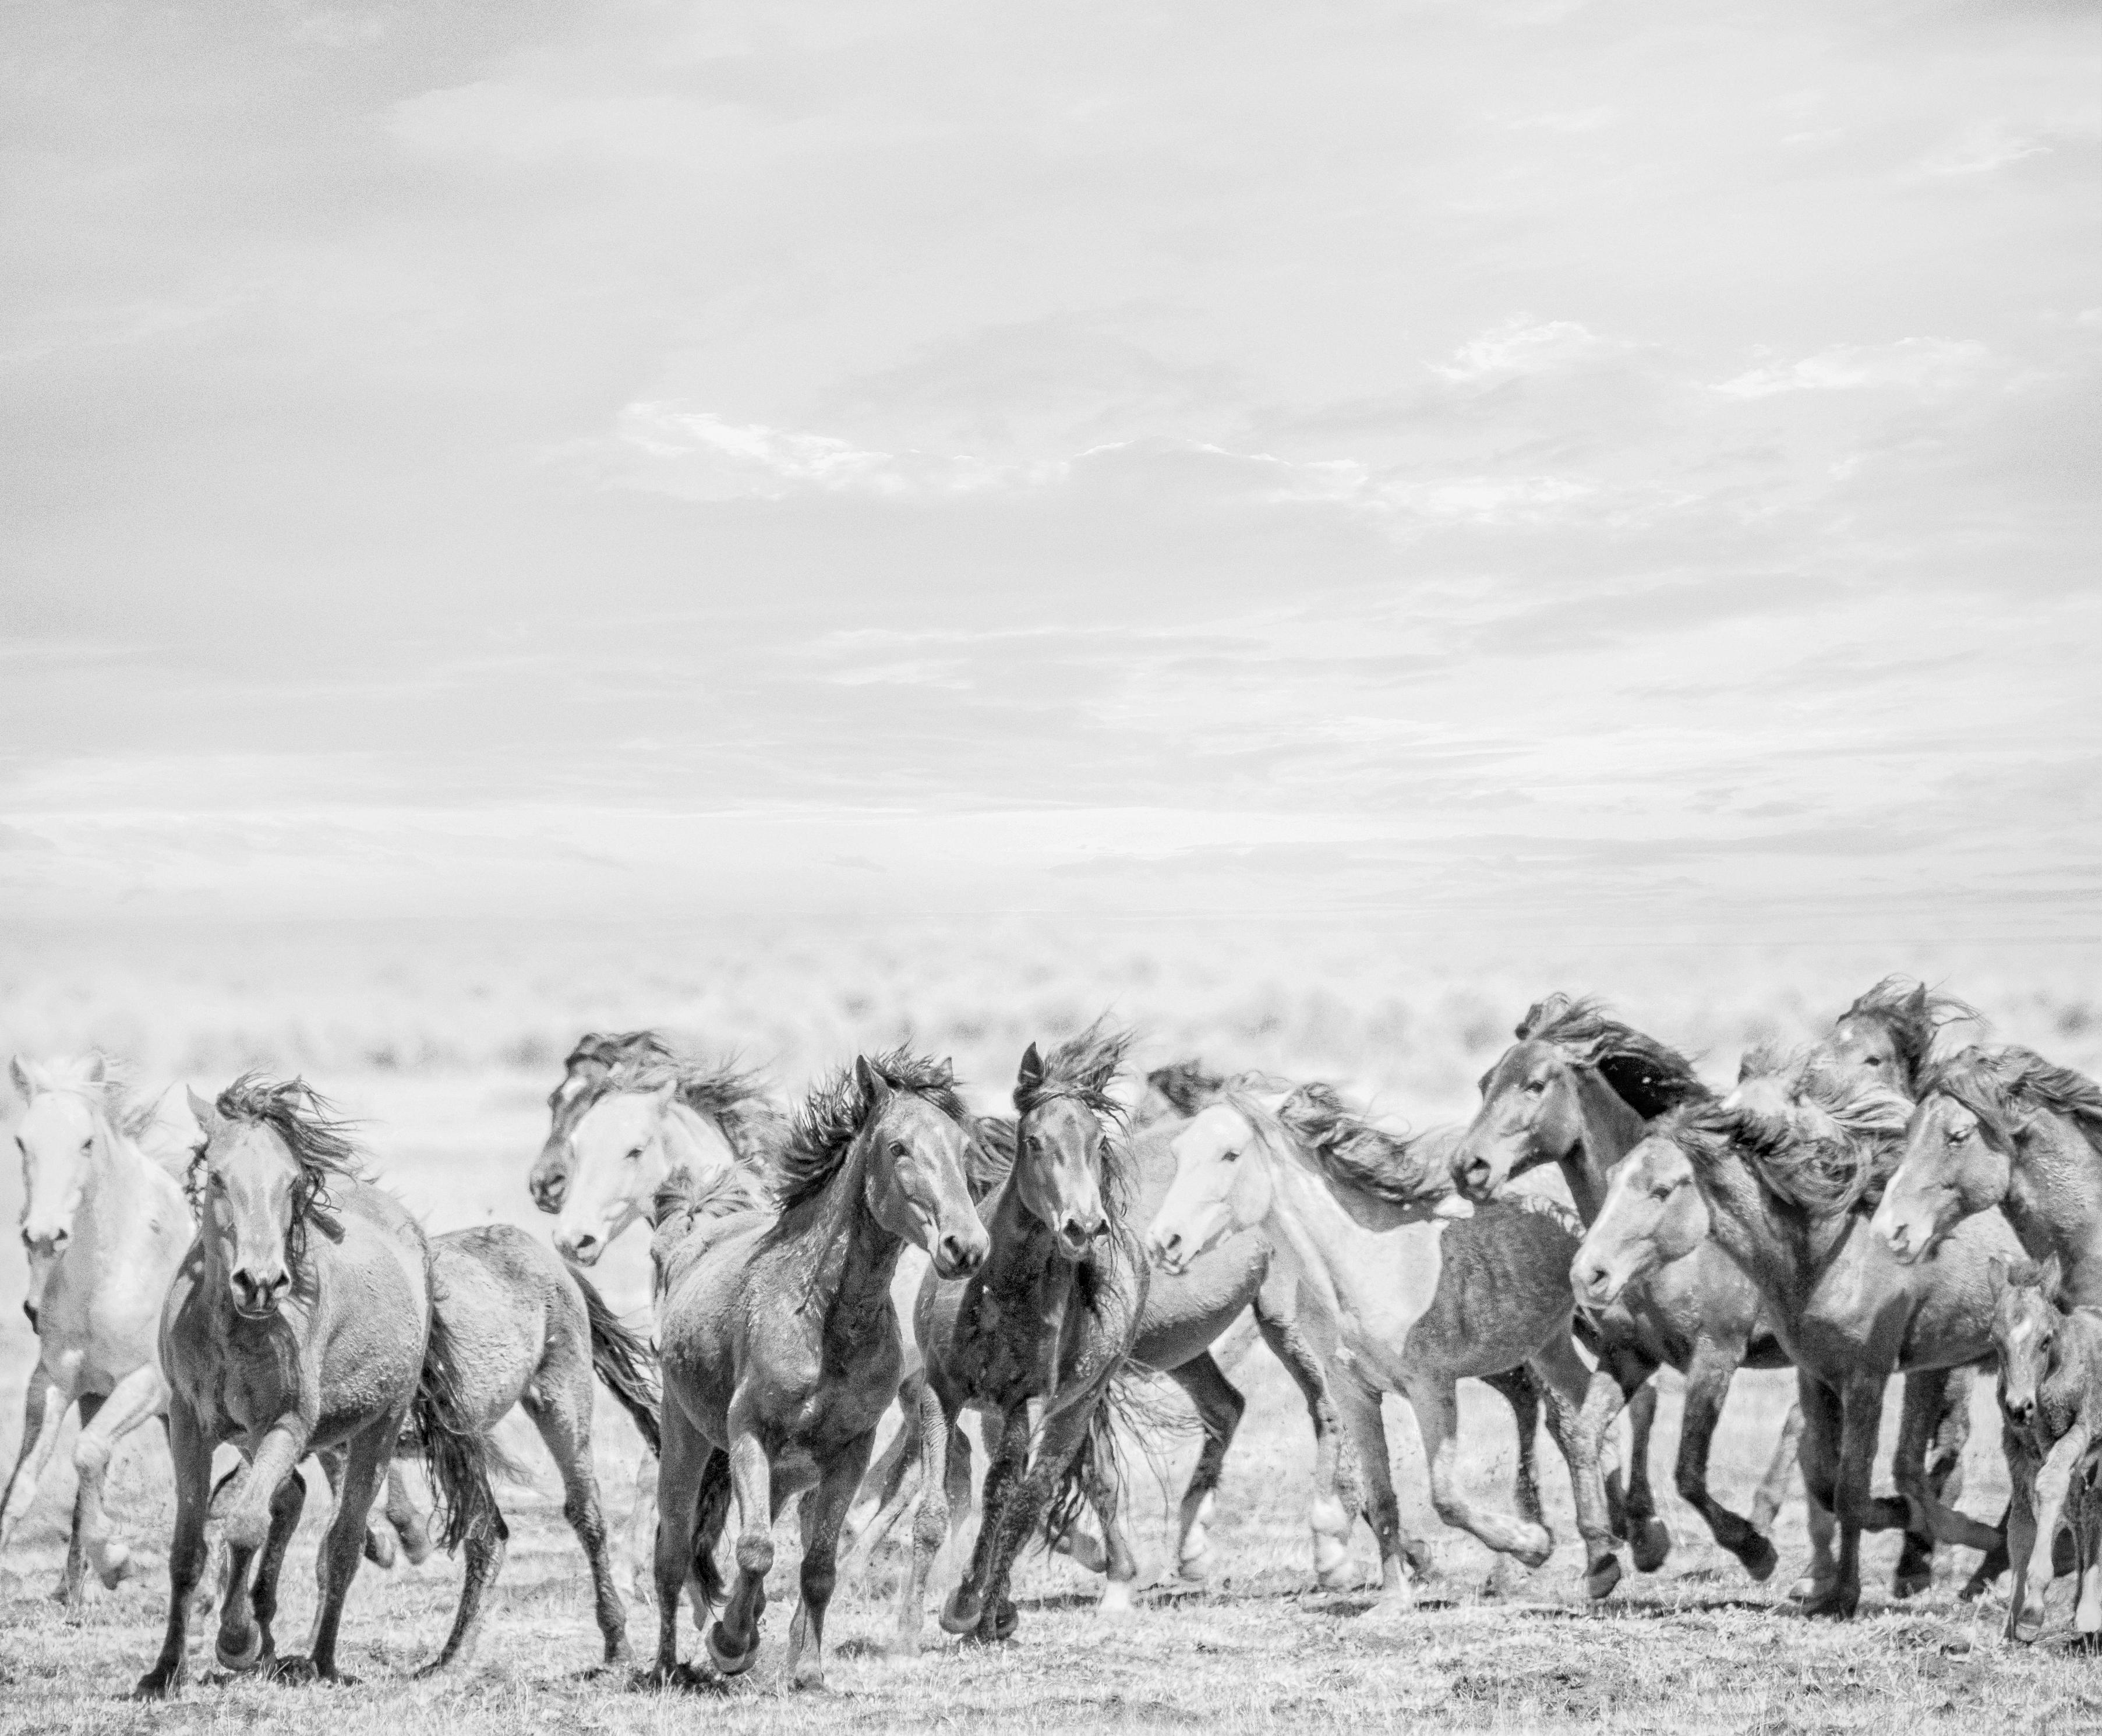 Black and White Photograph Shane Russeck - "Go West"  Photographie en noir et blanc 36x48 représentant des chevaux sauvages mourants - Non signée